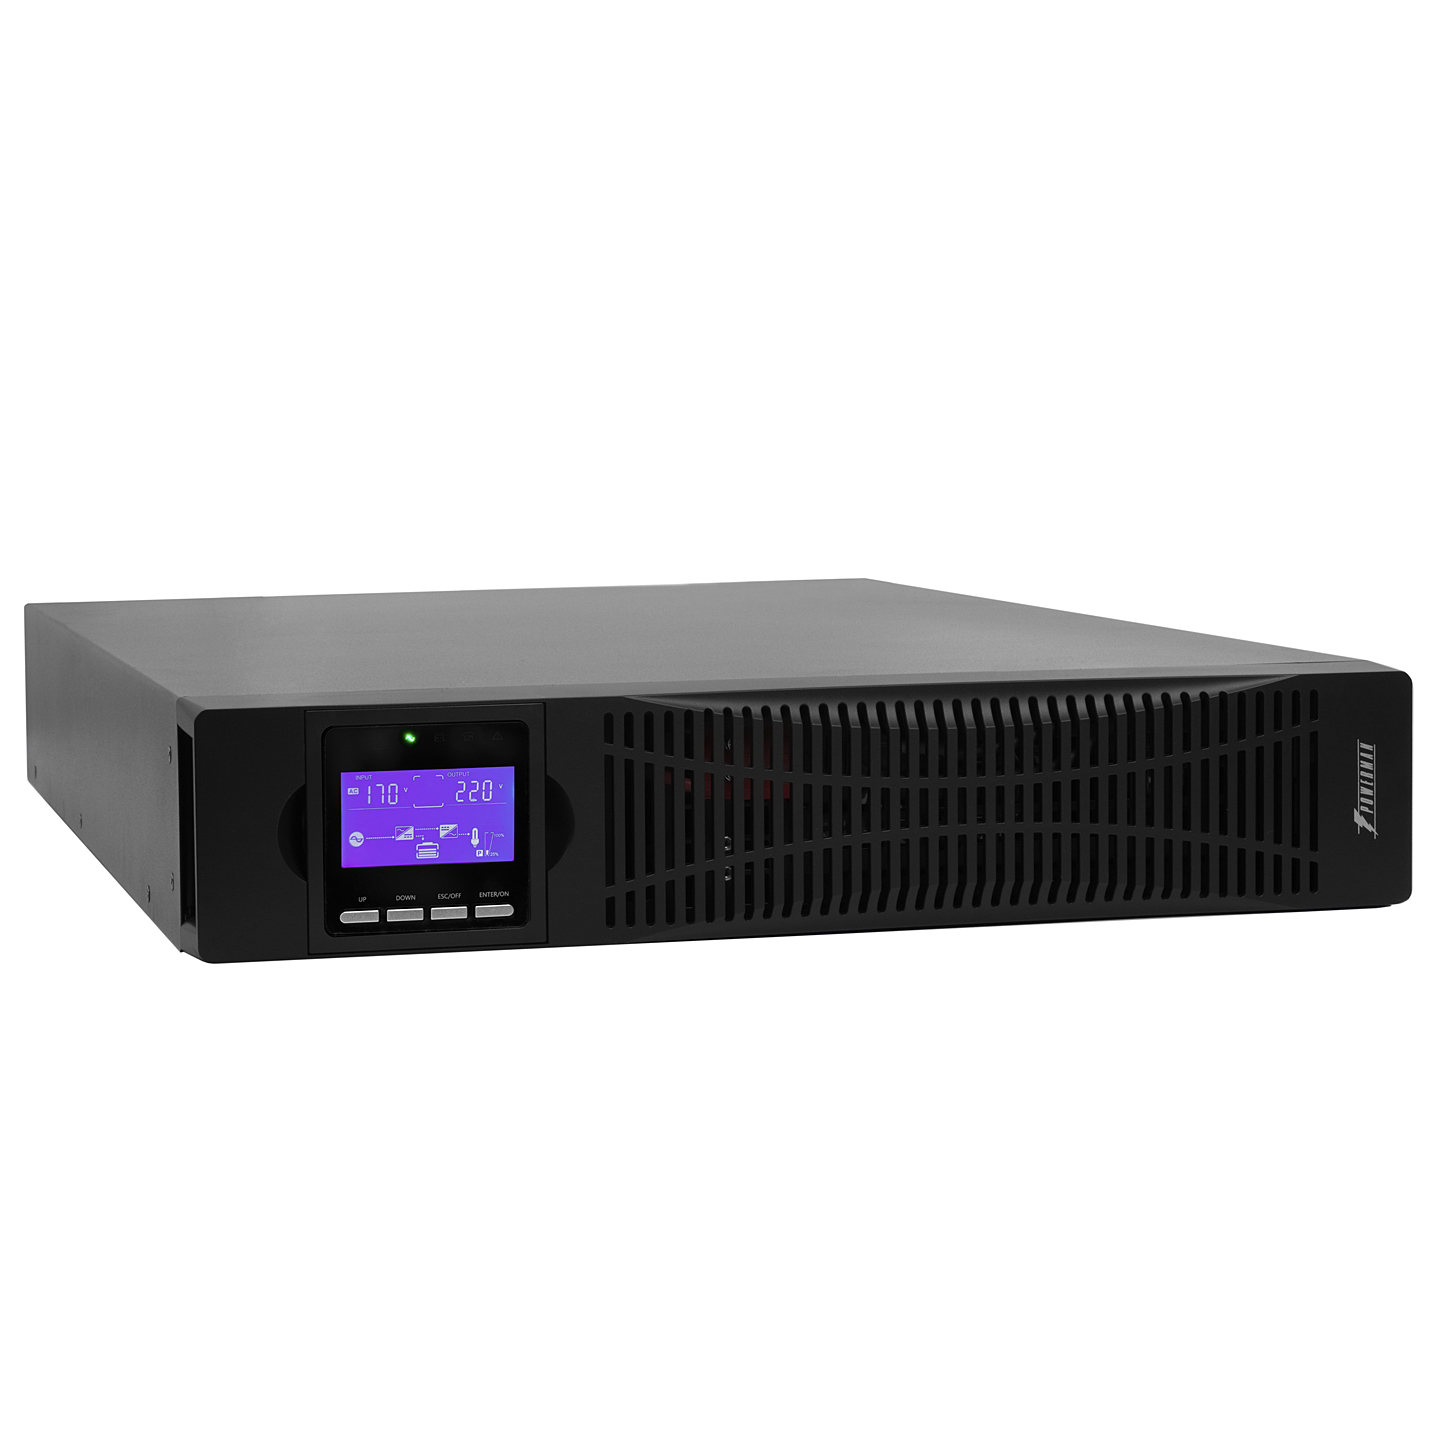 ИБП Powerman Online 1000 RT, 1000 В·А, 900 Вт, IEC, розеток - 8, USB, черный